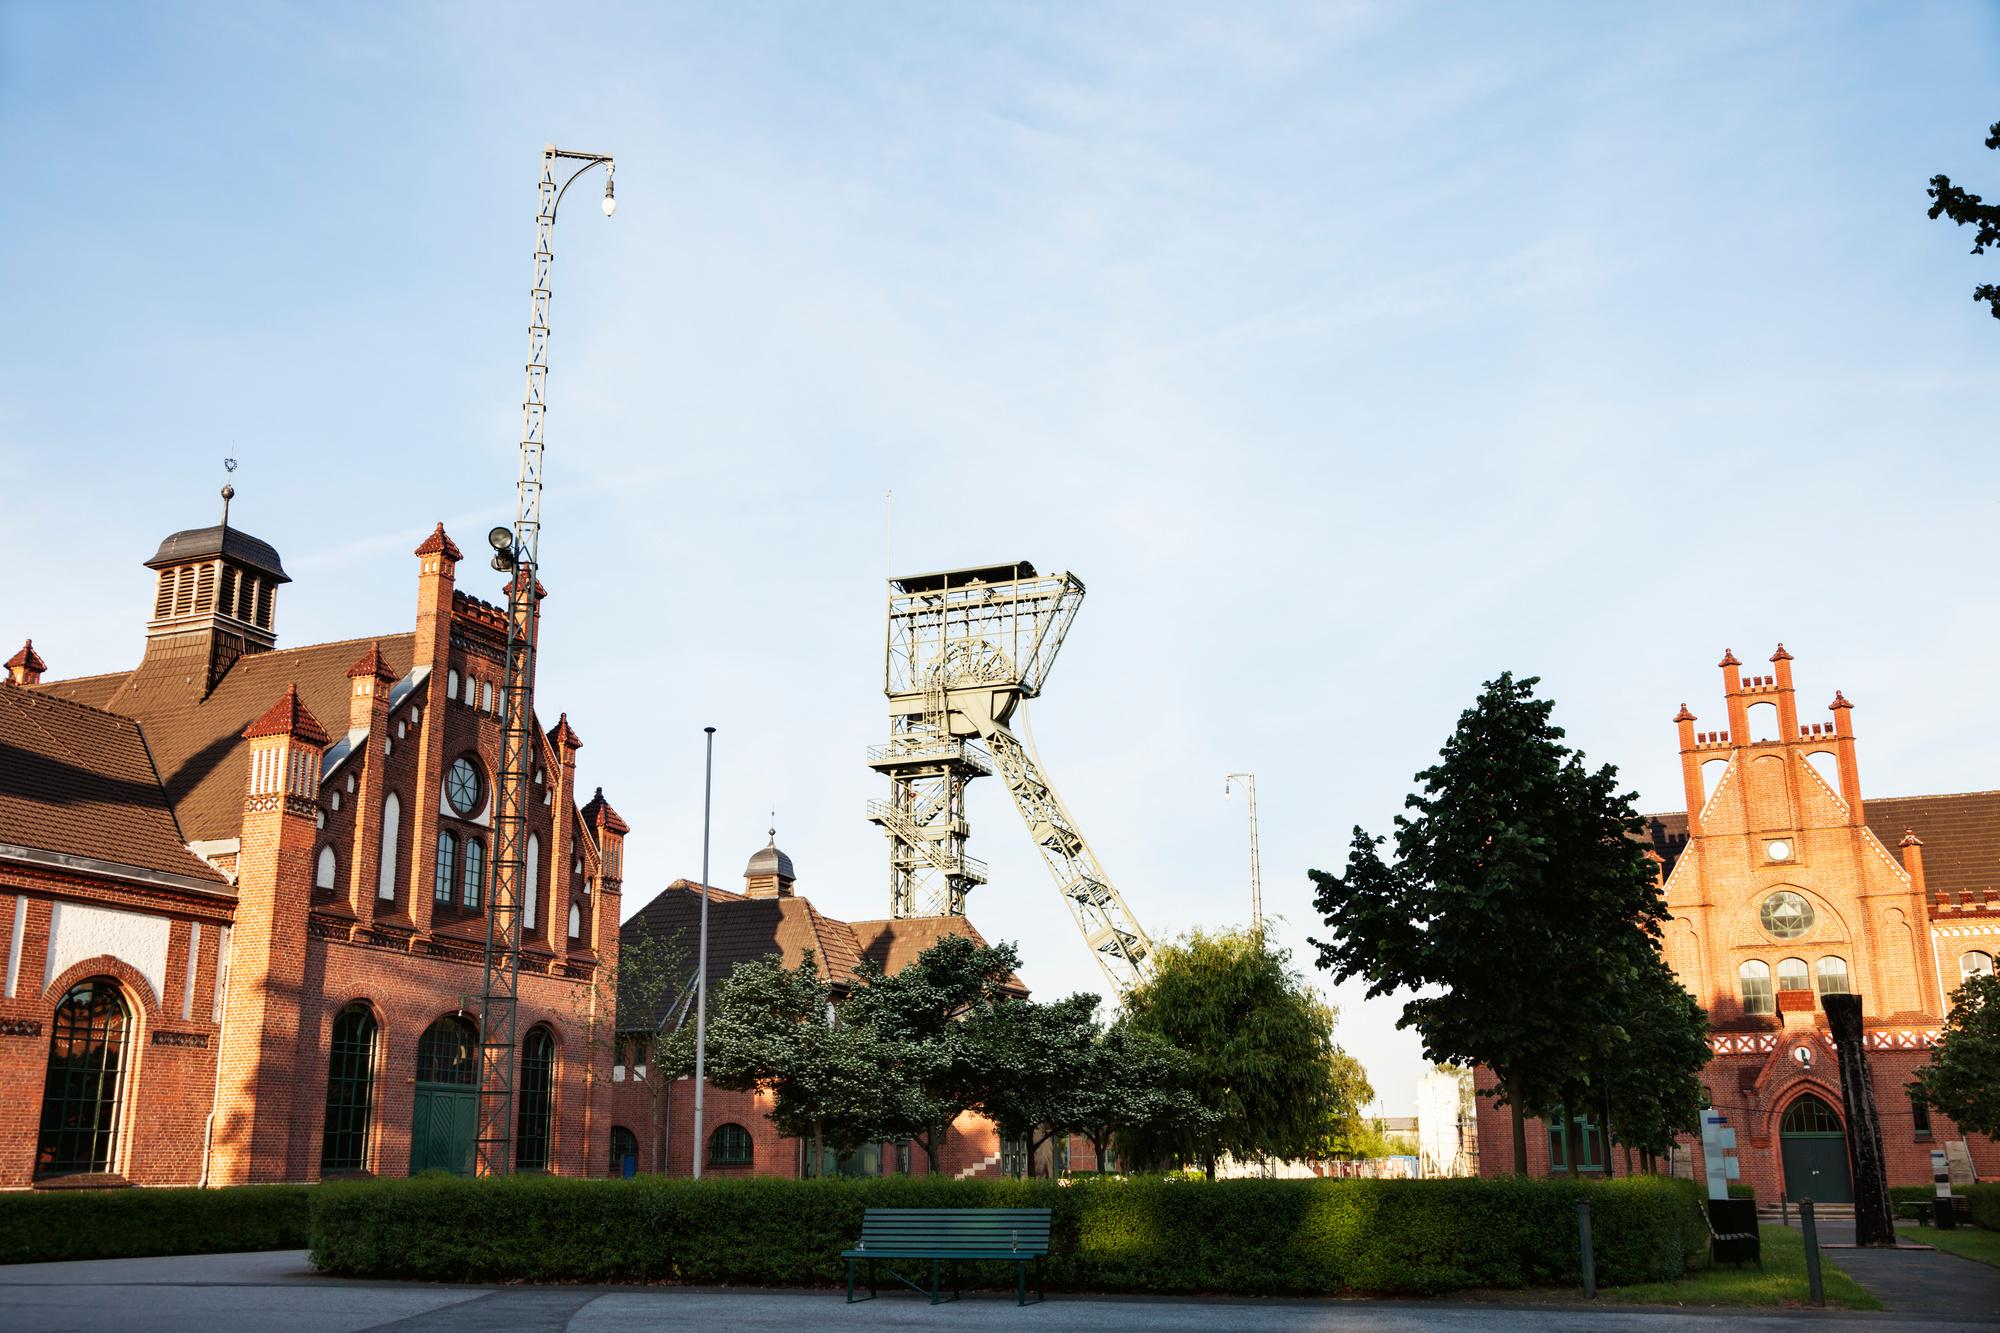 Industrile architectuur in Dortmund